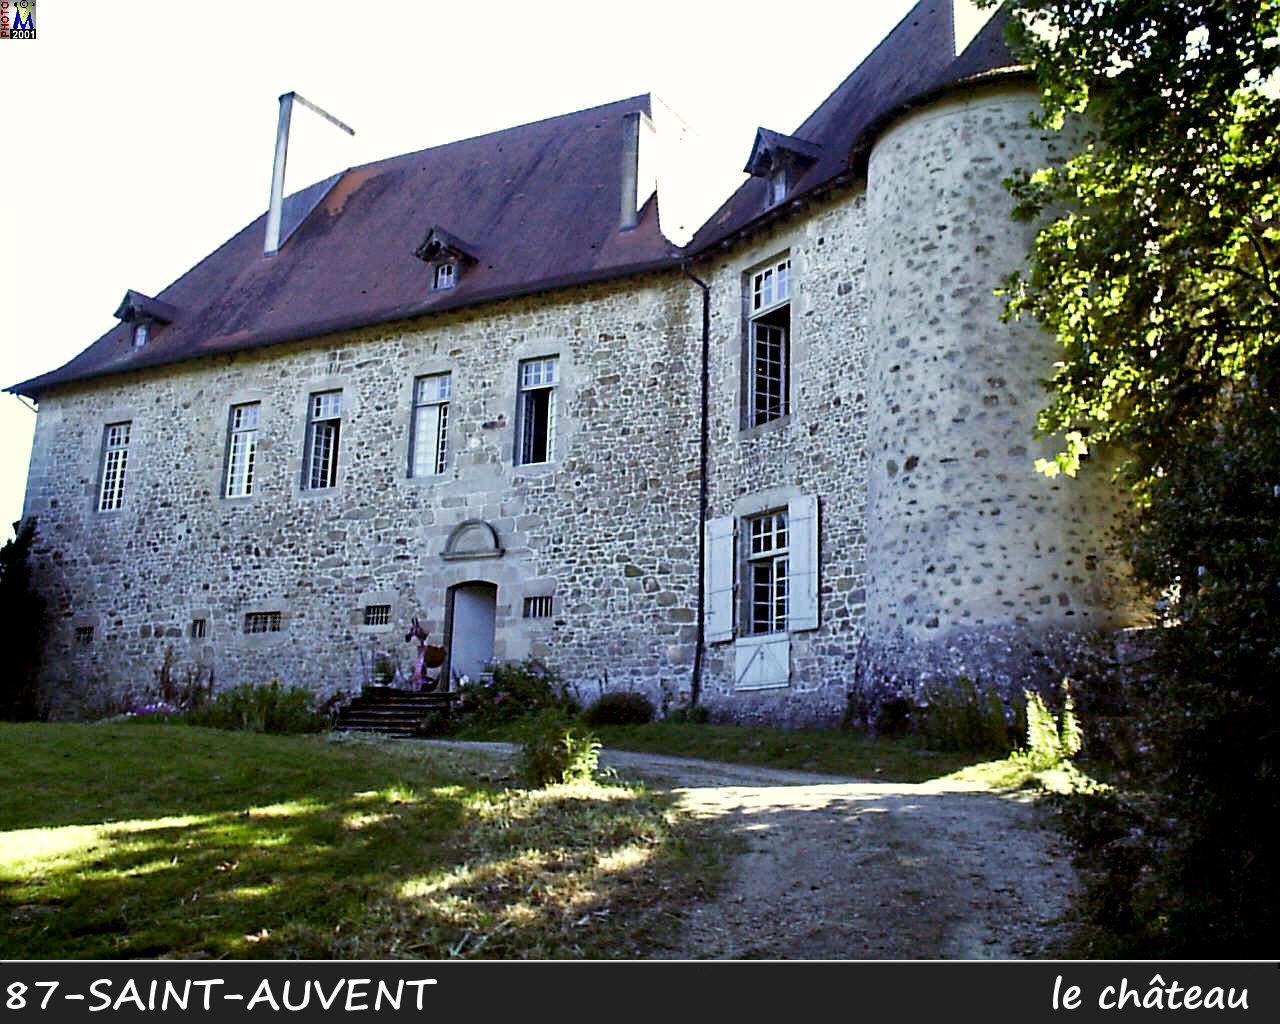 87St-AUVENT chateau 100.jpg